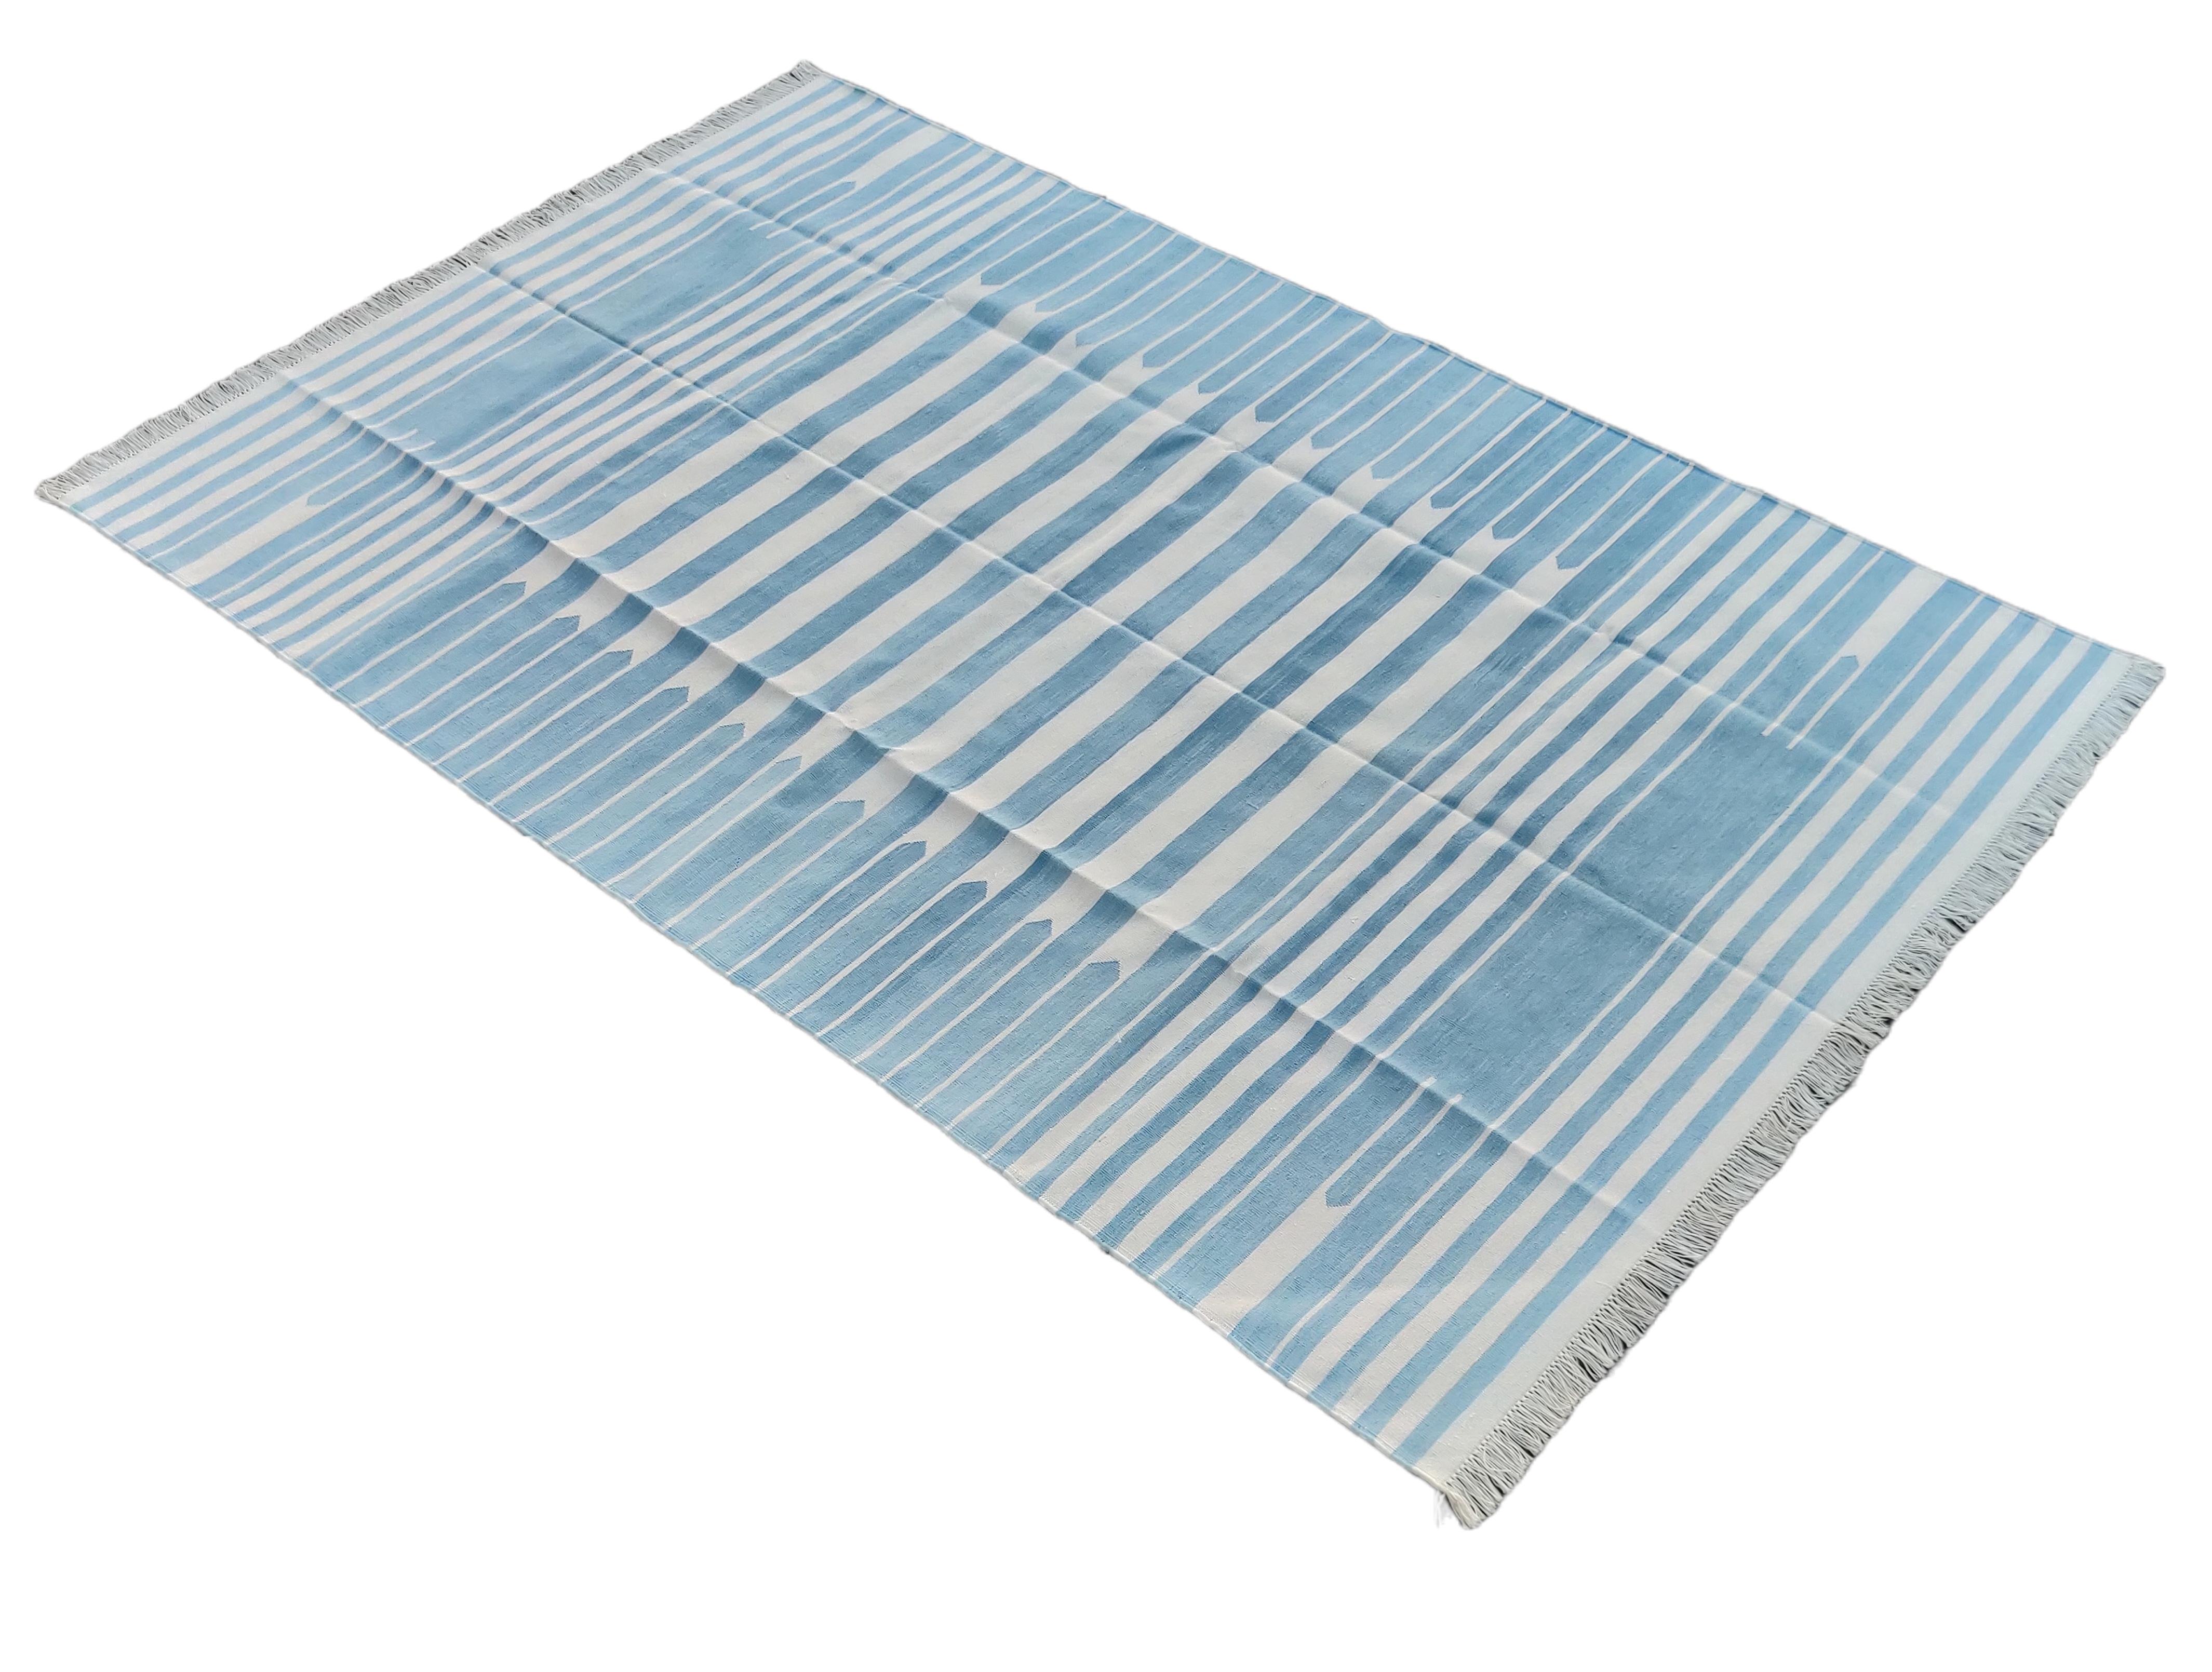 Baumwolle pflanzlich gefärbt blau und weiß gestreift indischen Dhurrie Teppich-5'x8' 
Diese speziellen flachgewebten Dhurries werden aus 15-fachem Garn aus 100% Baumwolle handgewebt. Aufgrund der speziellen Fertigungstechniken, die zur Herstellung